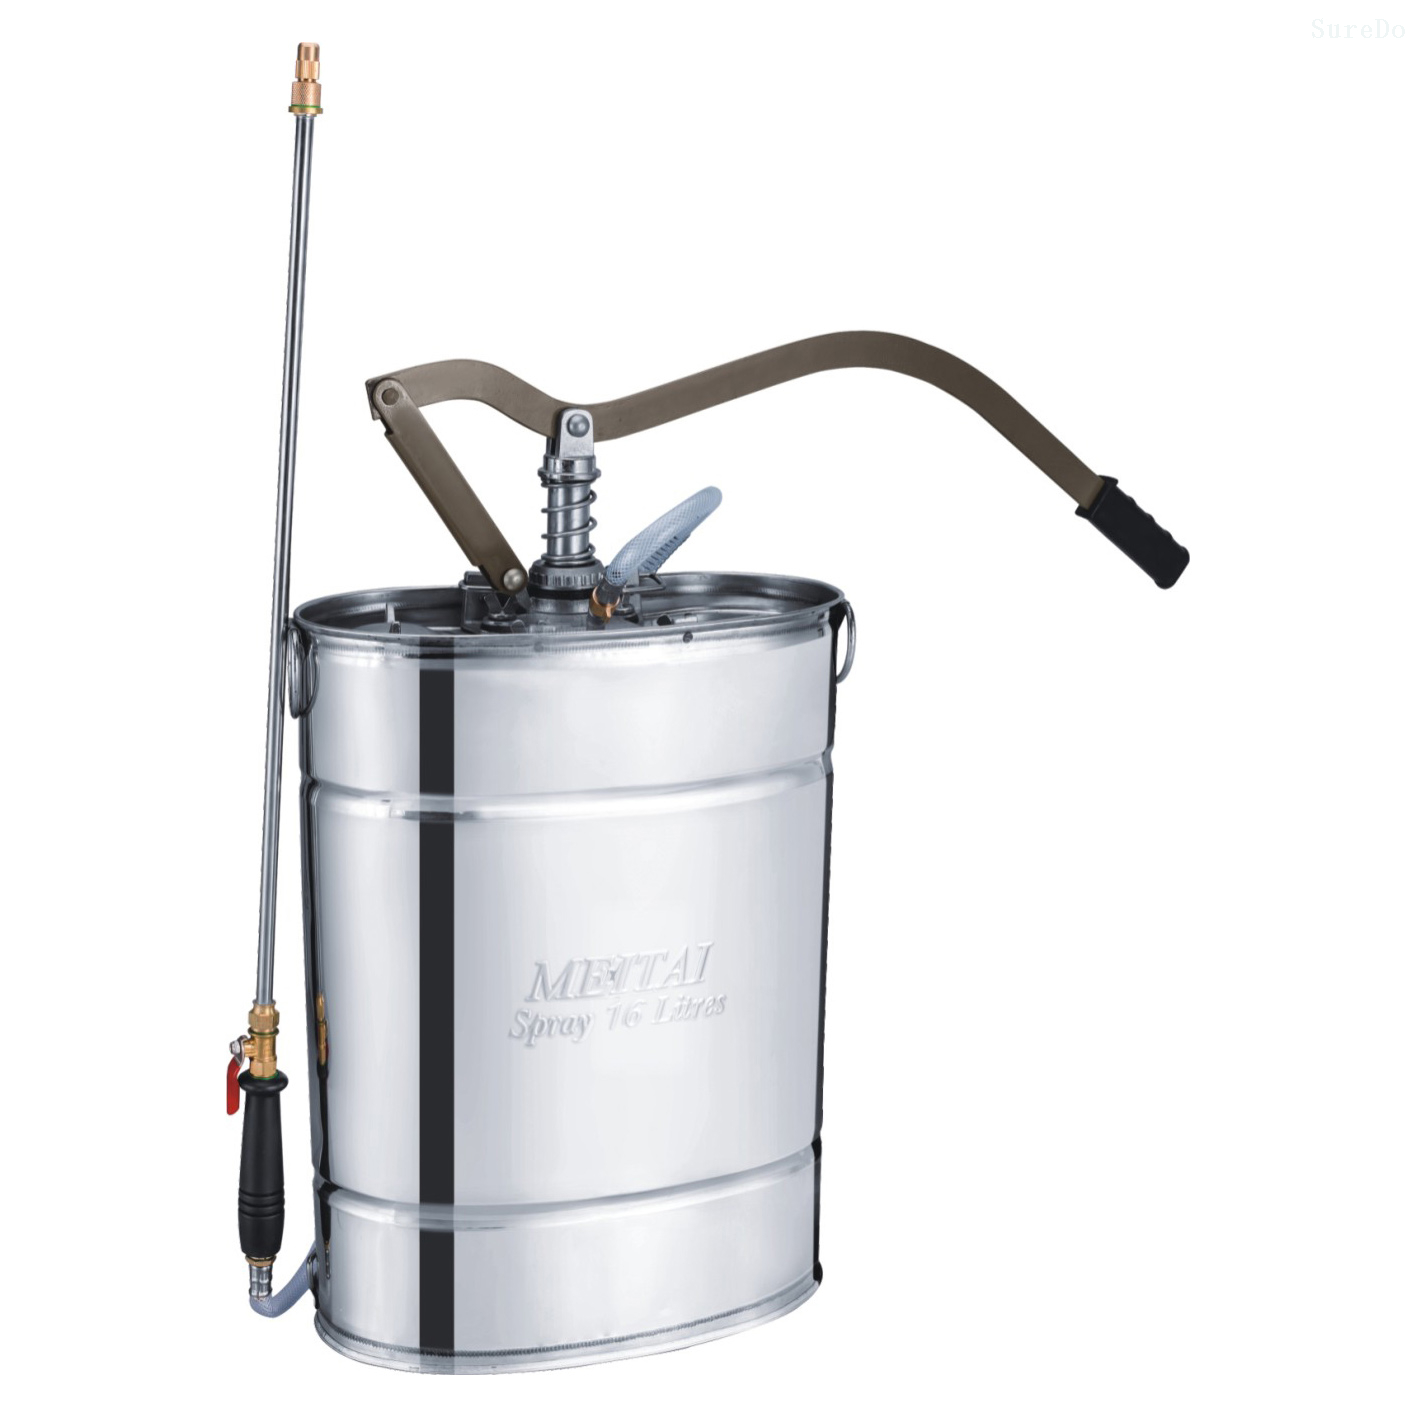 14-18 Liter High Quality Pull Down Stainless Steel Knapsack Sprayer